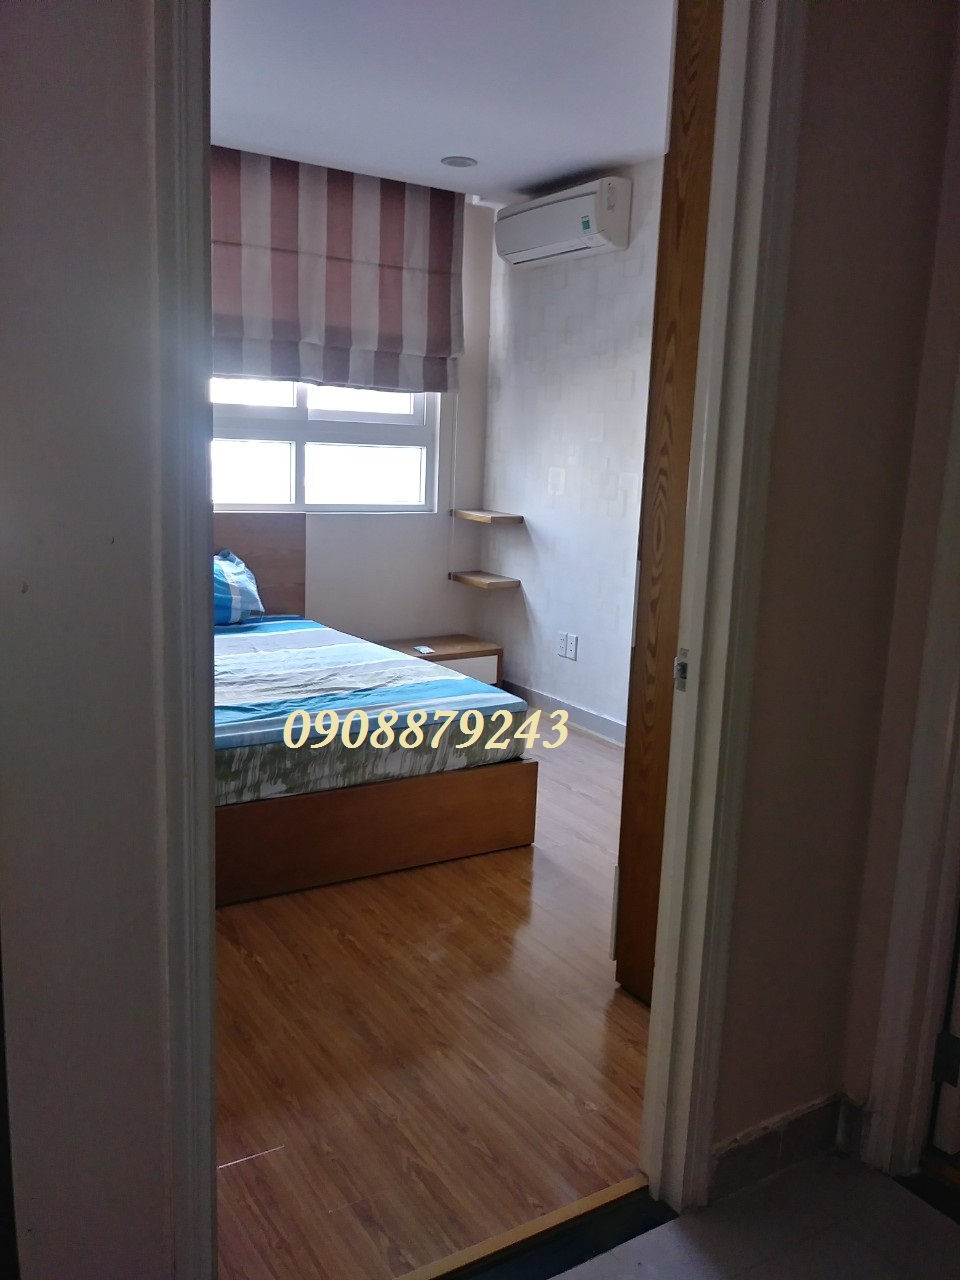 Cho thuê căn hộ Hà Đô NVC - 2PN full nội thất như hình giá 12 tr - 0908879243 Tuấn xem nhà